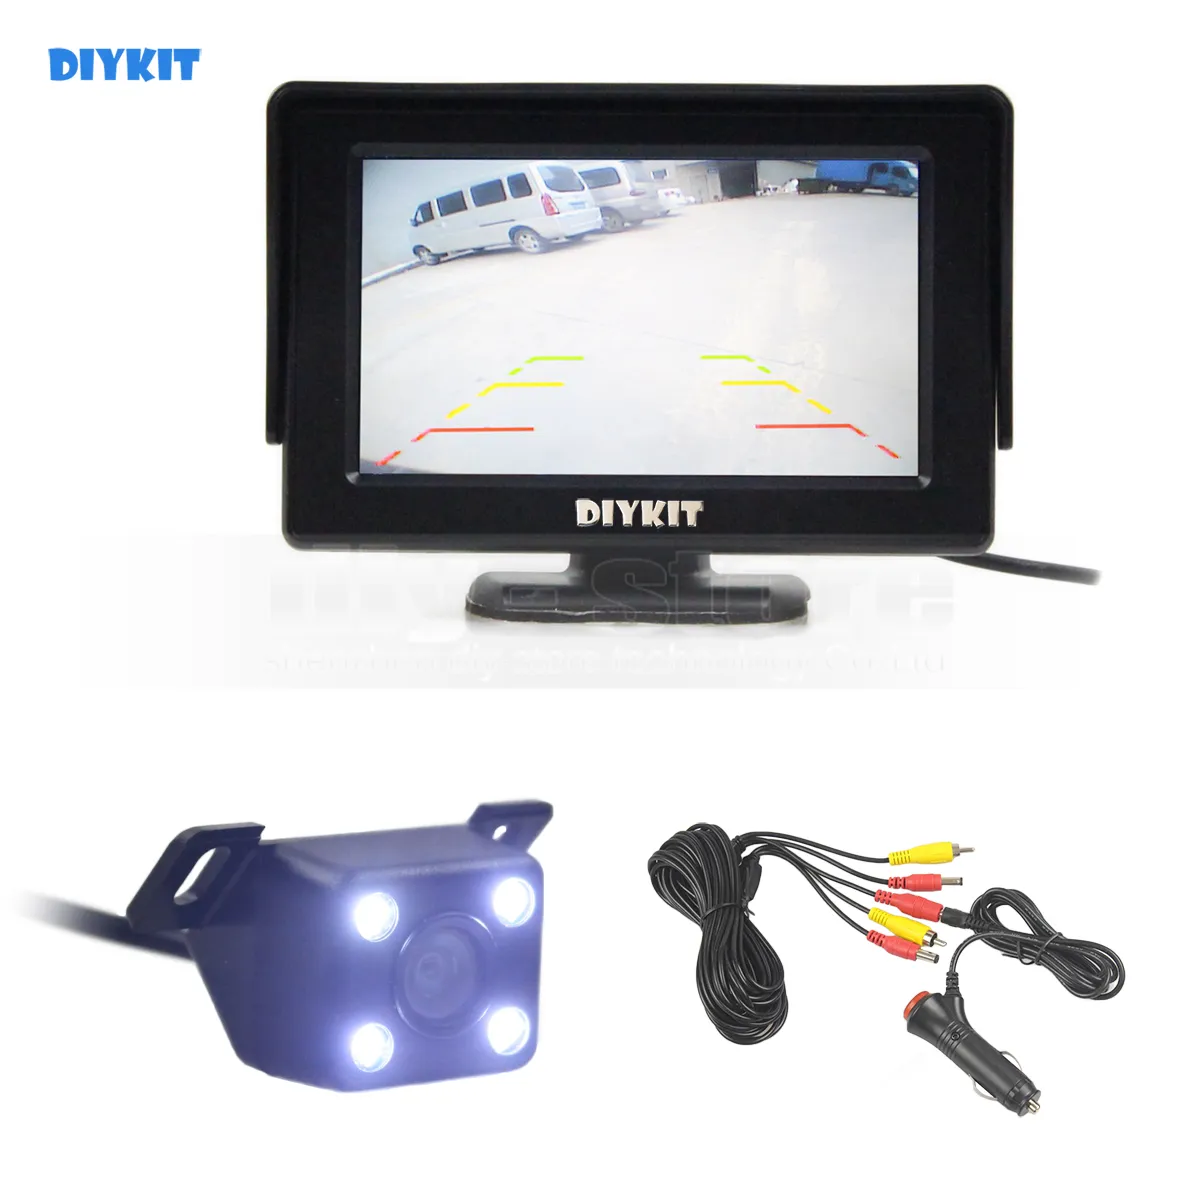 DIYKIT Wlred 4.3 Inch TFT LCD Car Monitor + LED Night Vision Vista posteriore Telecamera per auto Sistema di assistenza al parcheggio Ki